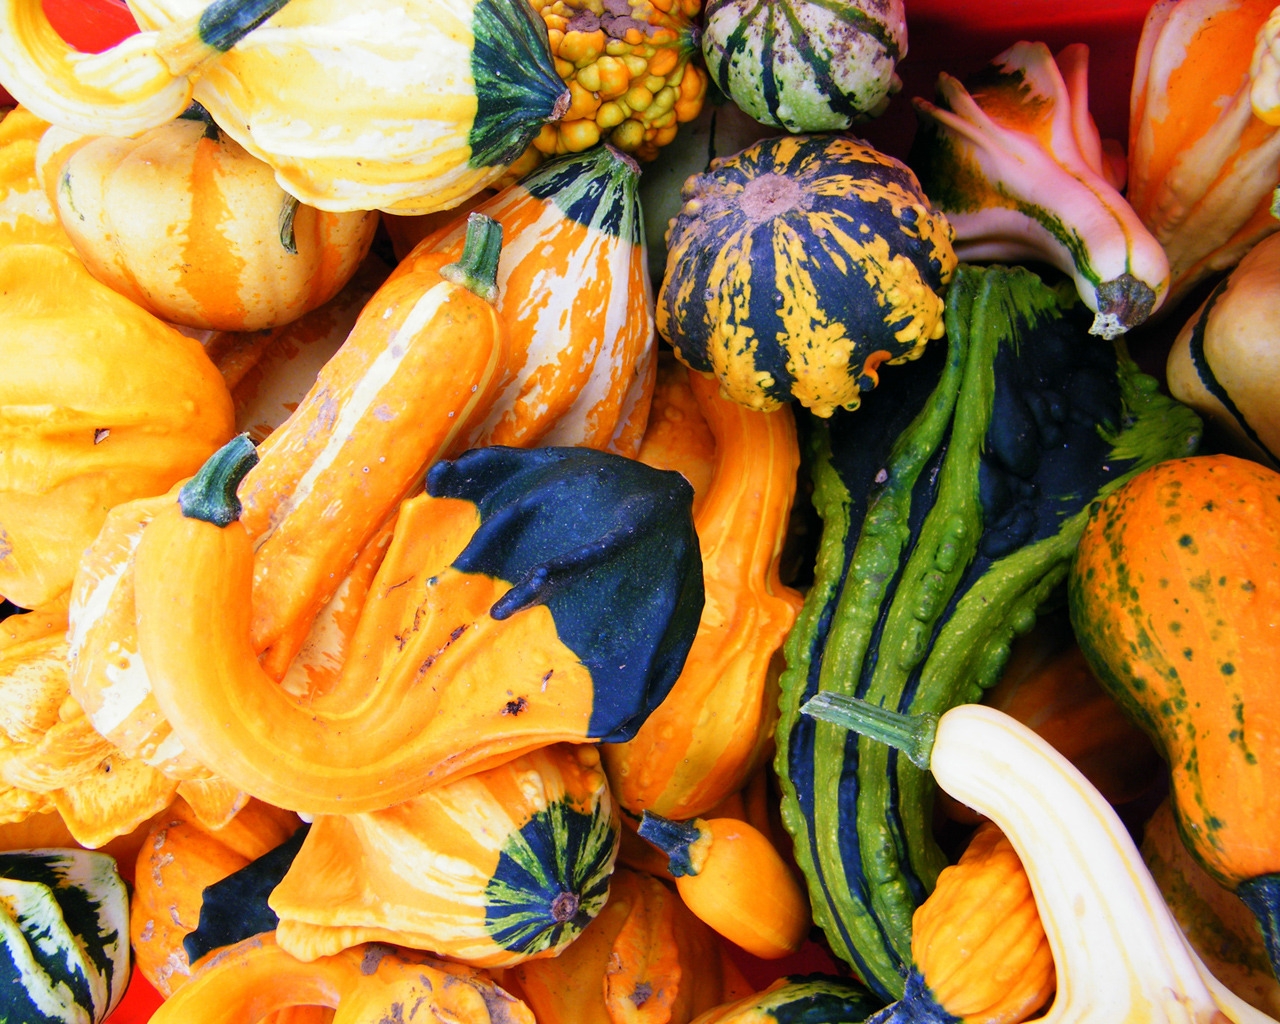 Autumn Pumpkins for 1280 x 1024 resolution